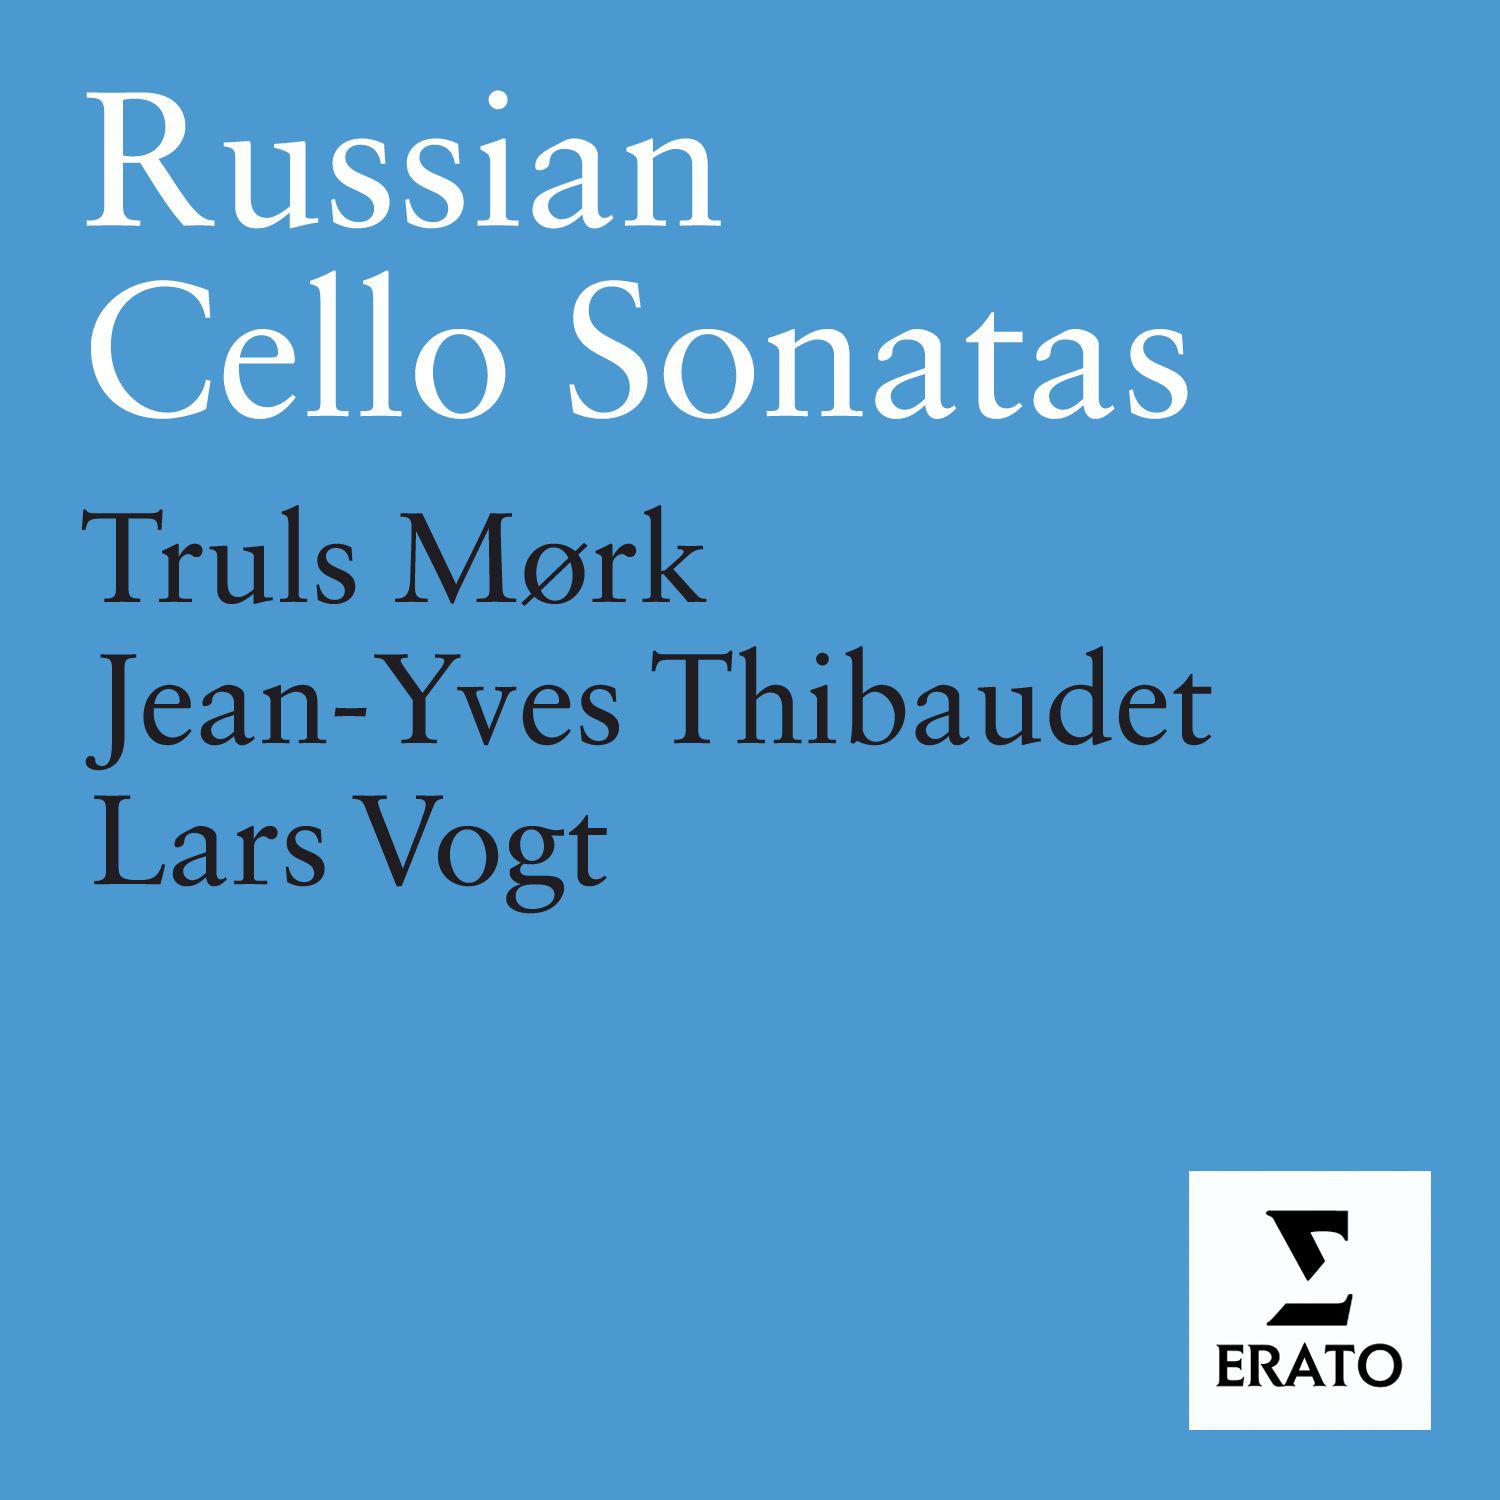 Cello Sonata in C major Op. 119: I. Andante grave - Moderato animato